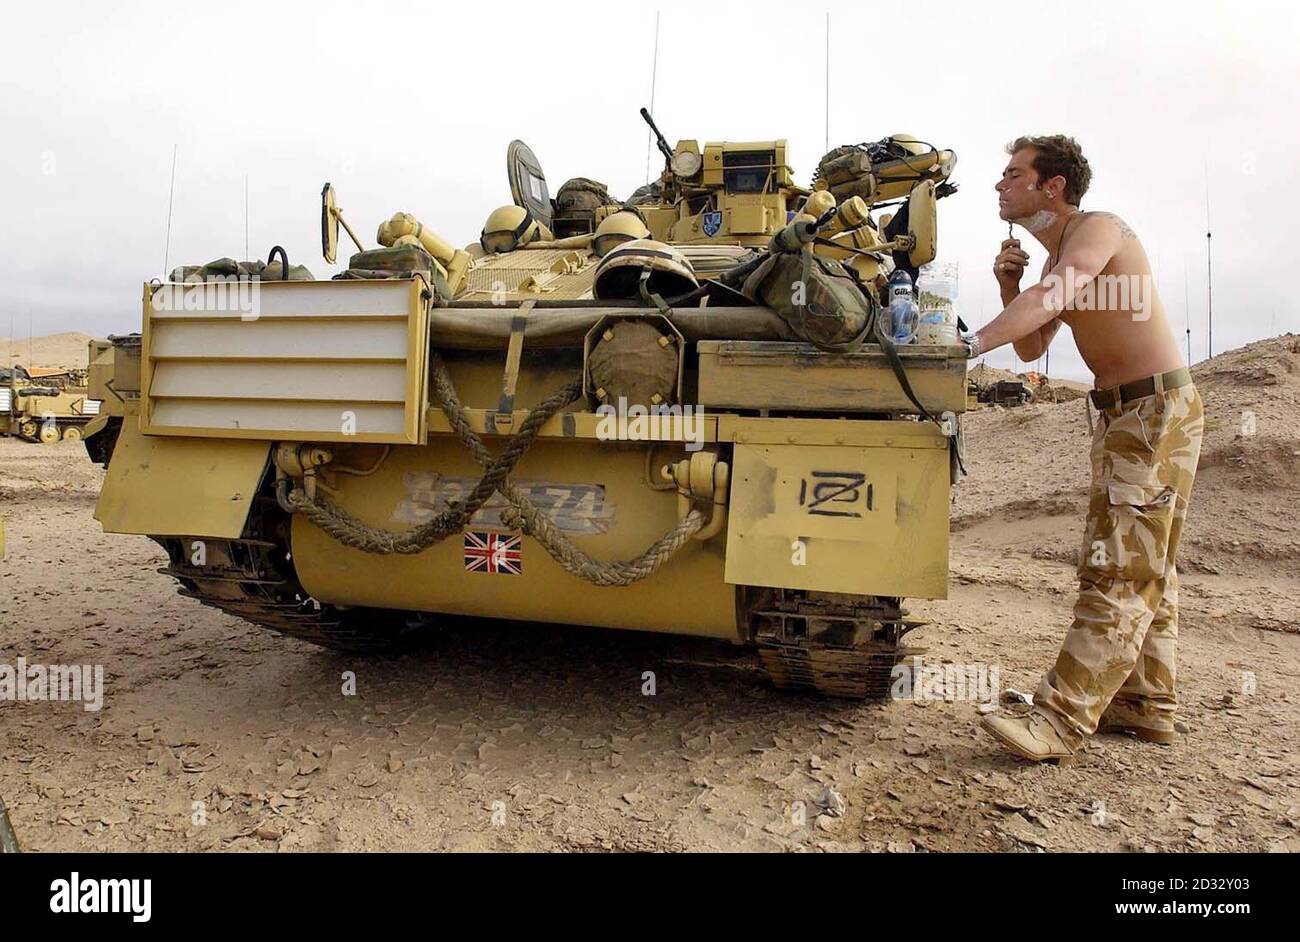 Un soldado tiene un afeitado usando los espejos de alas de su tanque espartano, mientras las tropas británicas de la Caballería de la Casa esperan en las alas mientras las fuerzas estadounidenses son enviadas más lejos a Irak. Foto de stock